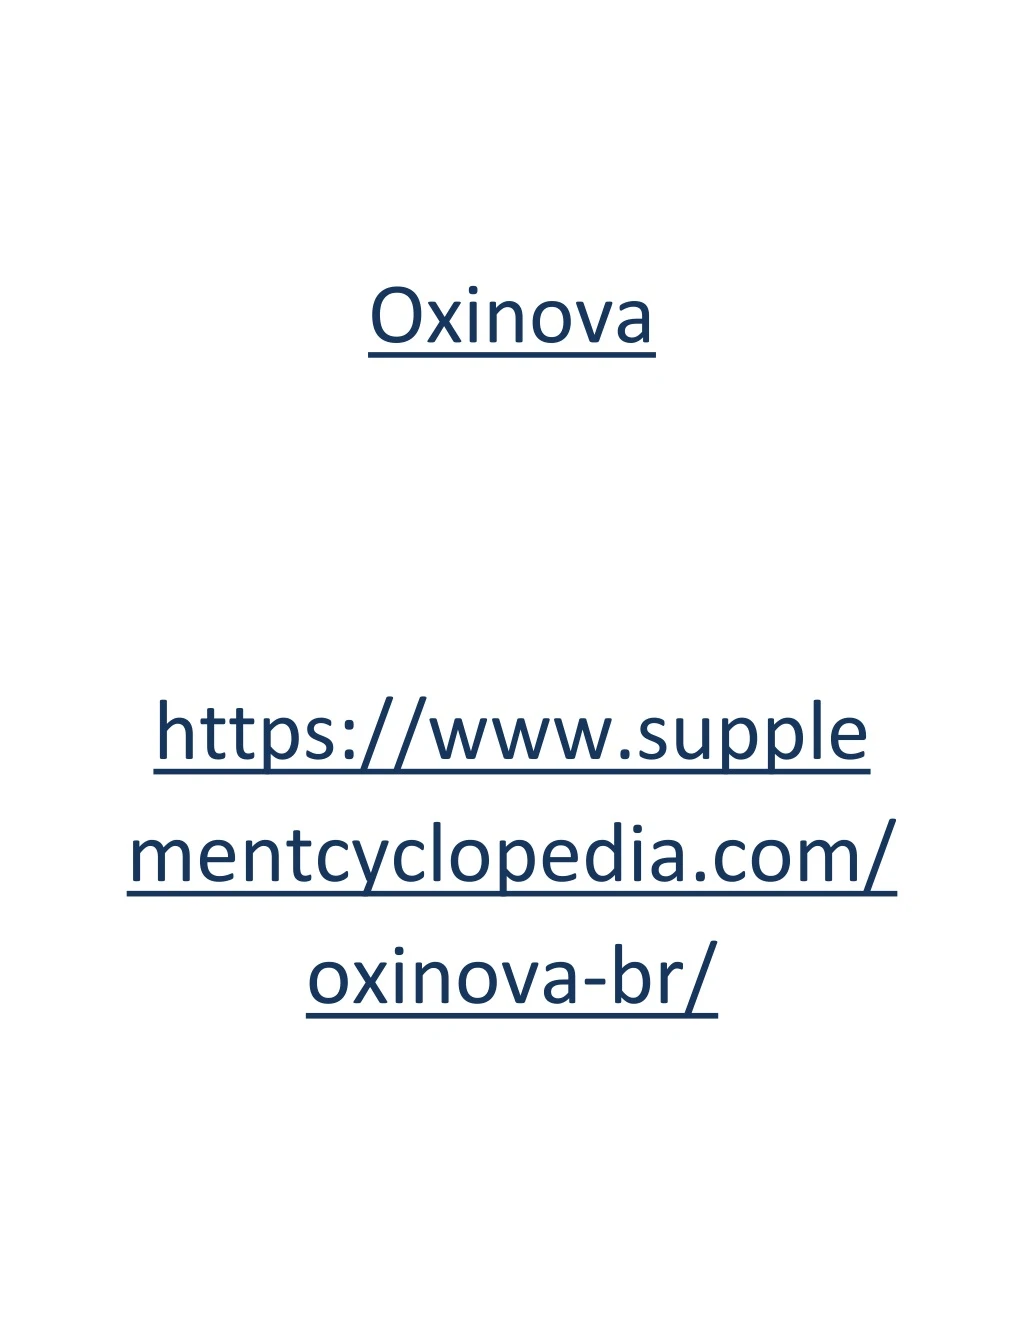 oxinova